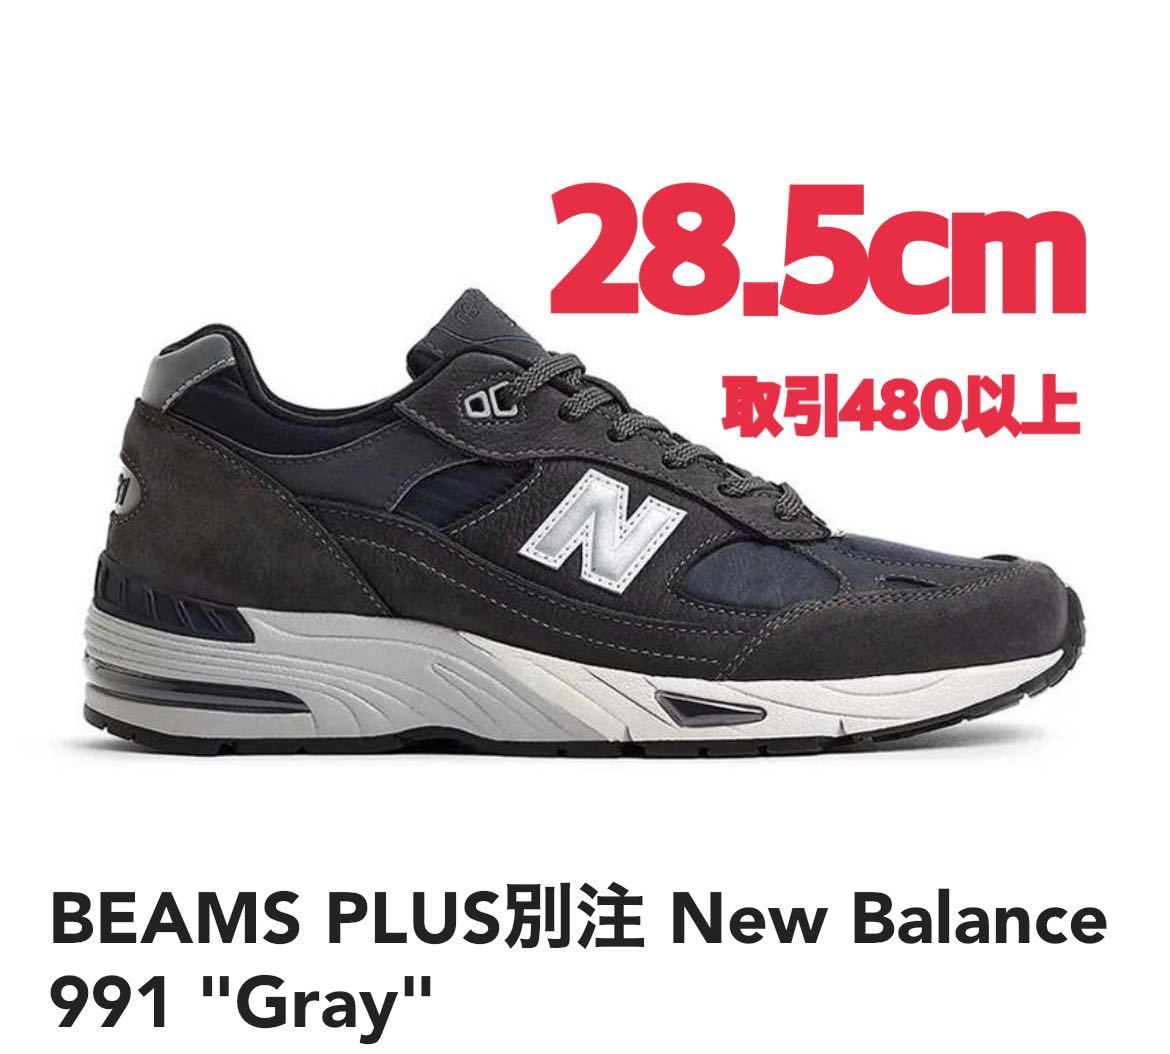 BEAMS PLUS別注 New Balance 991 Gray 28.5cm ビームス プラス 別注 ニューバランス 991 グレー US10.5